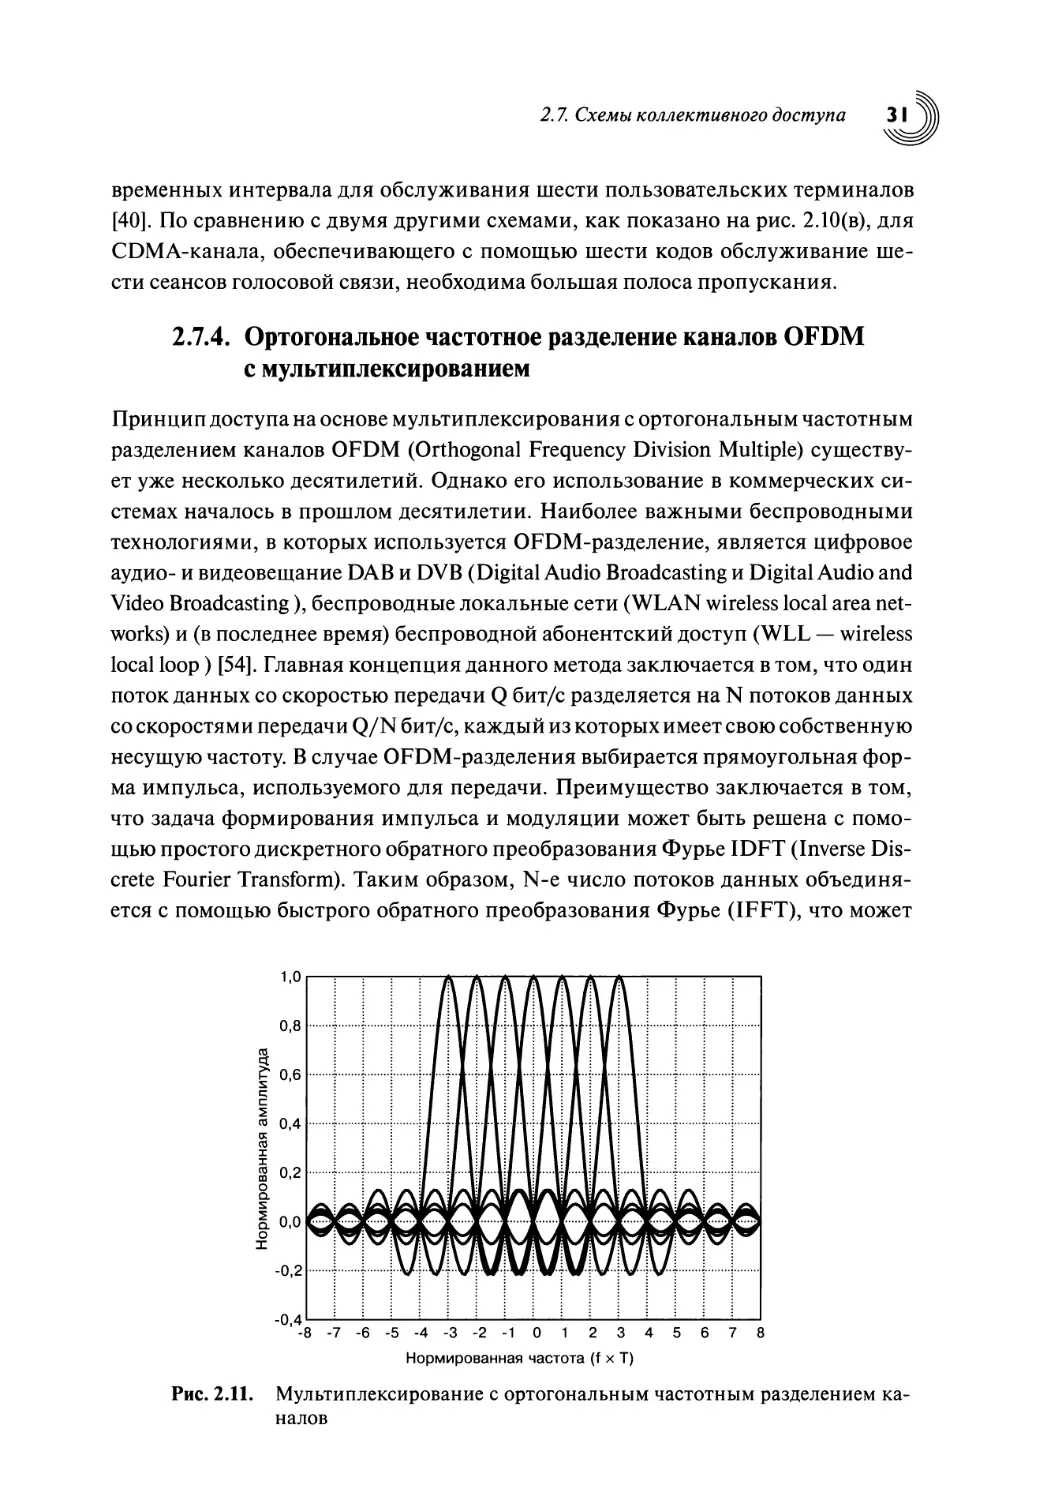 2.7.4. Ортогональное частотное разделение каналов OFDM с мультиплексированием